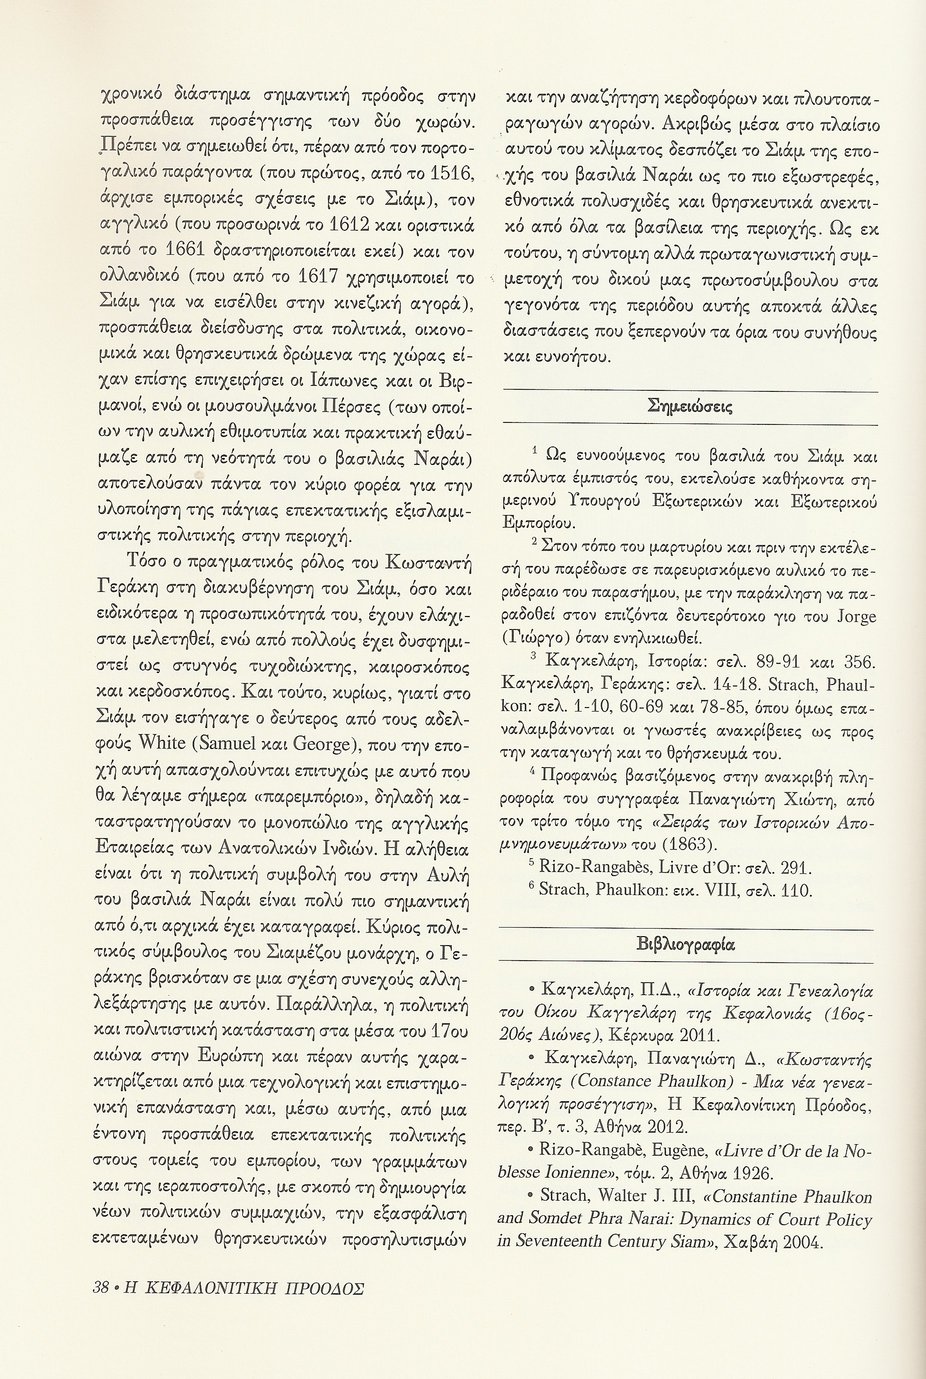 Γαλλικό Οικόσημο Κωσταντή Γεράκη (Constance Phaulkon) , Κεφαλονίτικη Πρόοδος, Β-7, σελ. 38